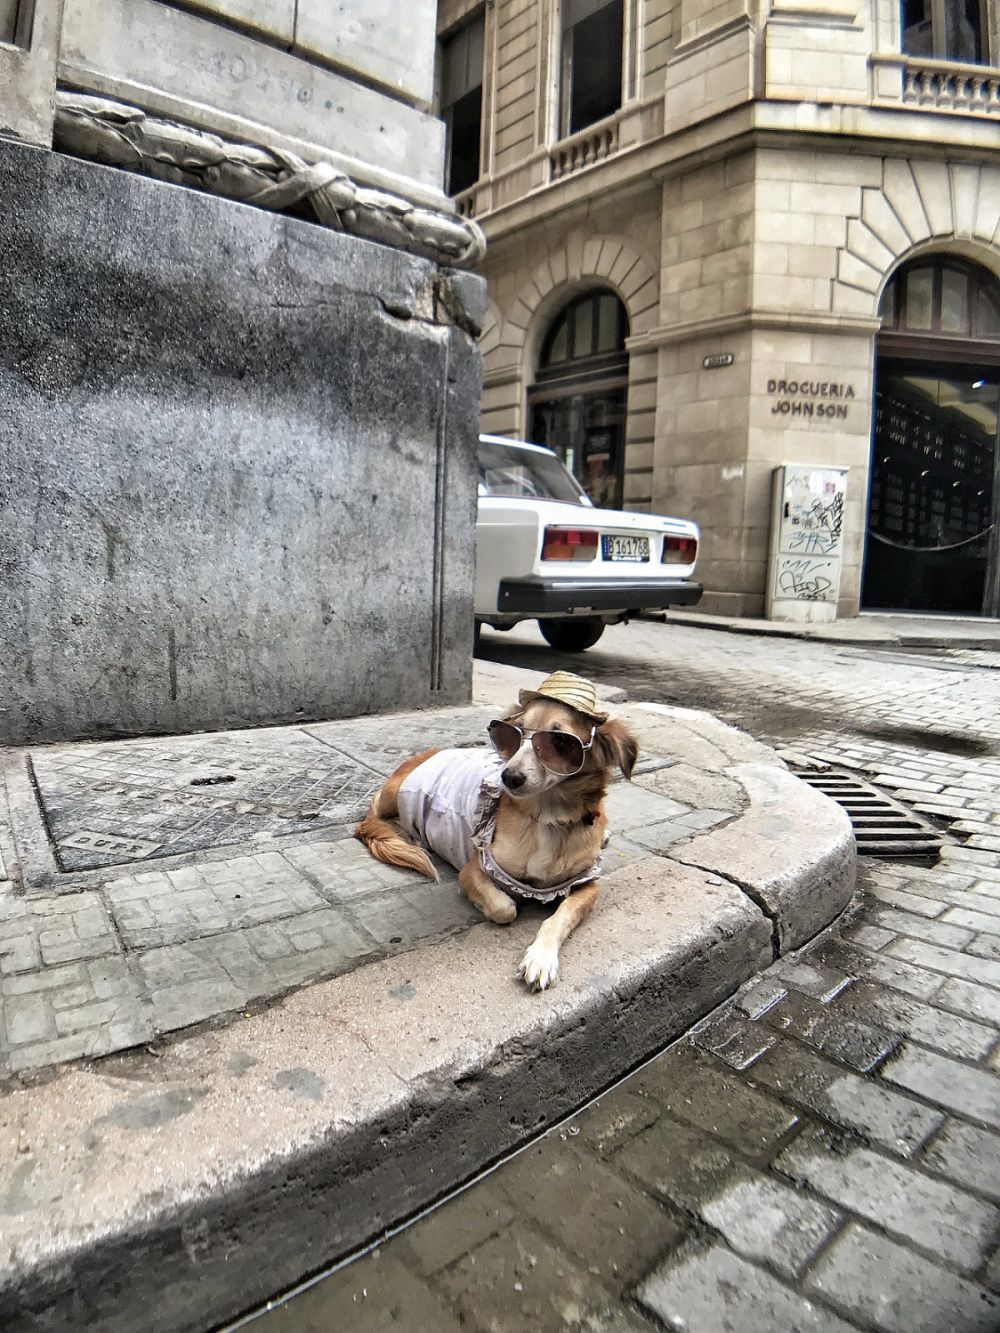 9 Foto Lucu Anjing Memakai Kacamata, Gayanya Keren Abis!